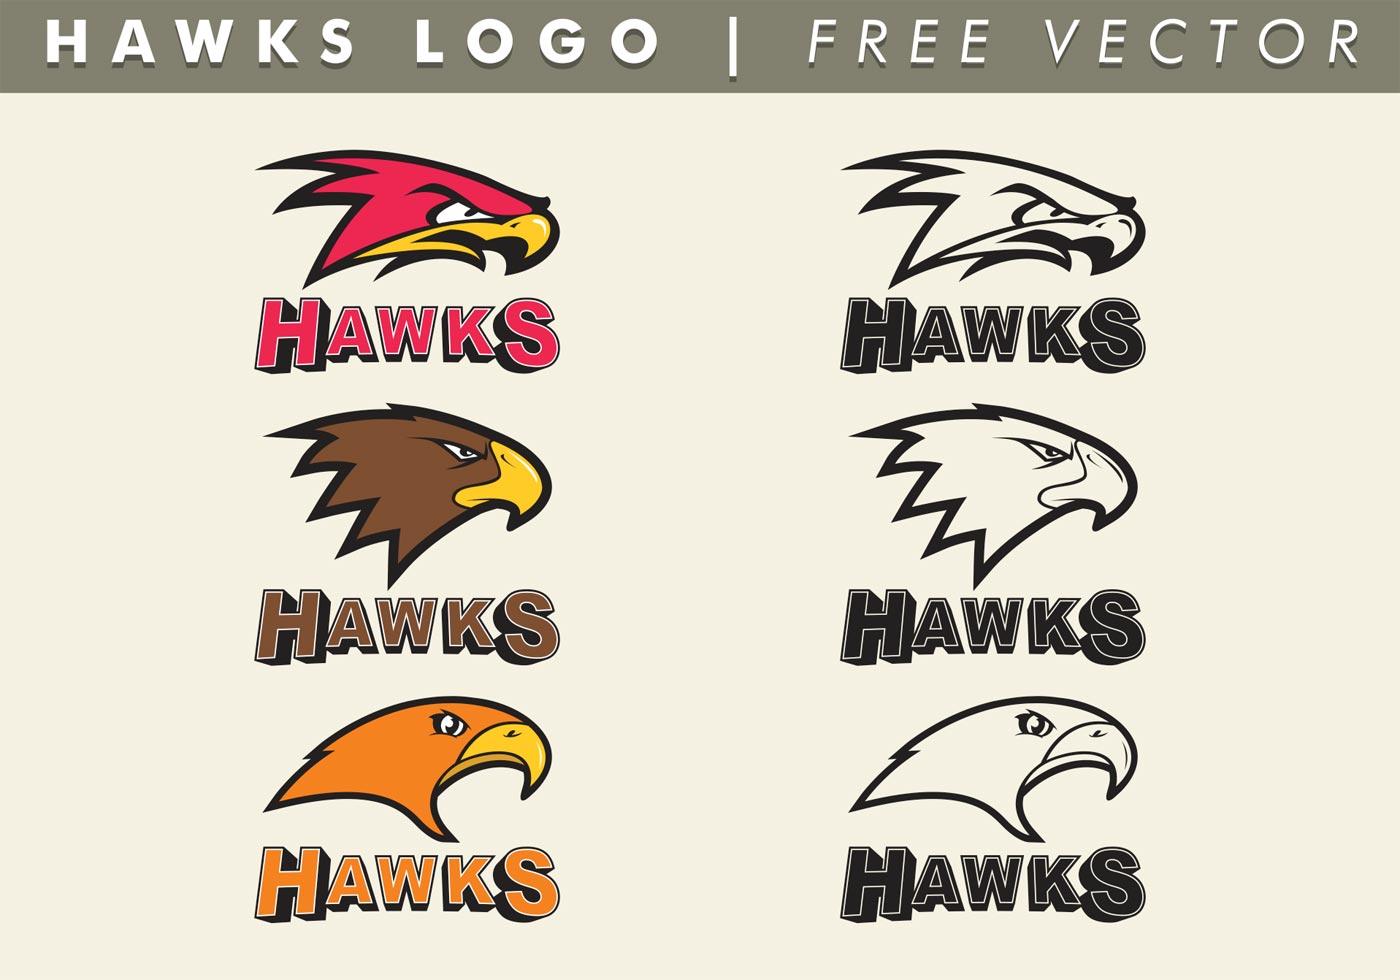 Hawks Logo Vector Free 92303 Vector Art at Vecteezy